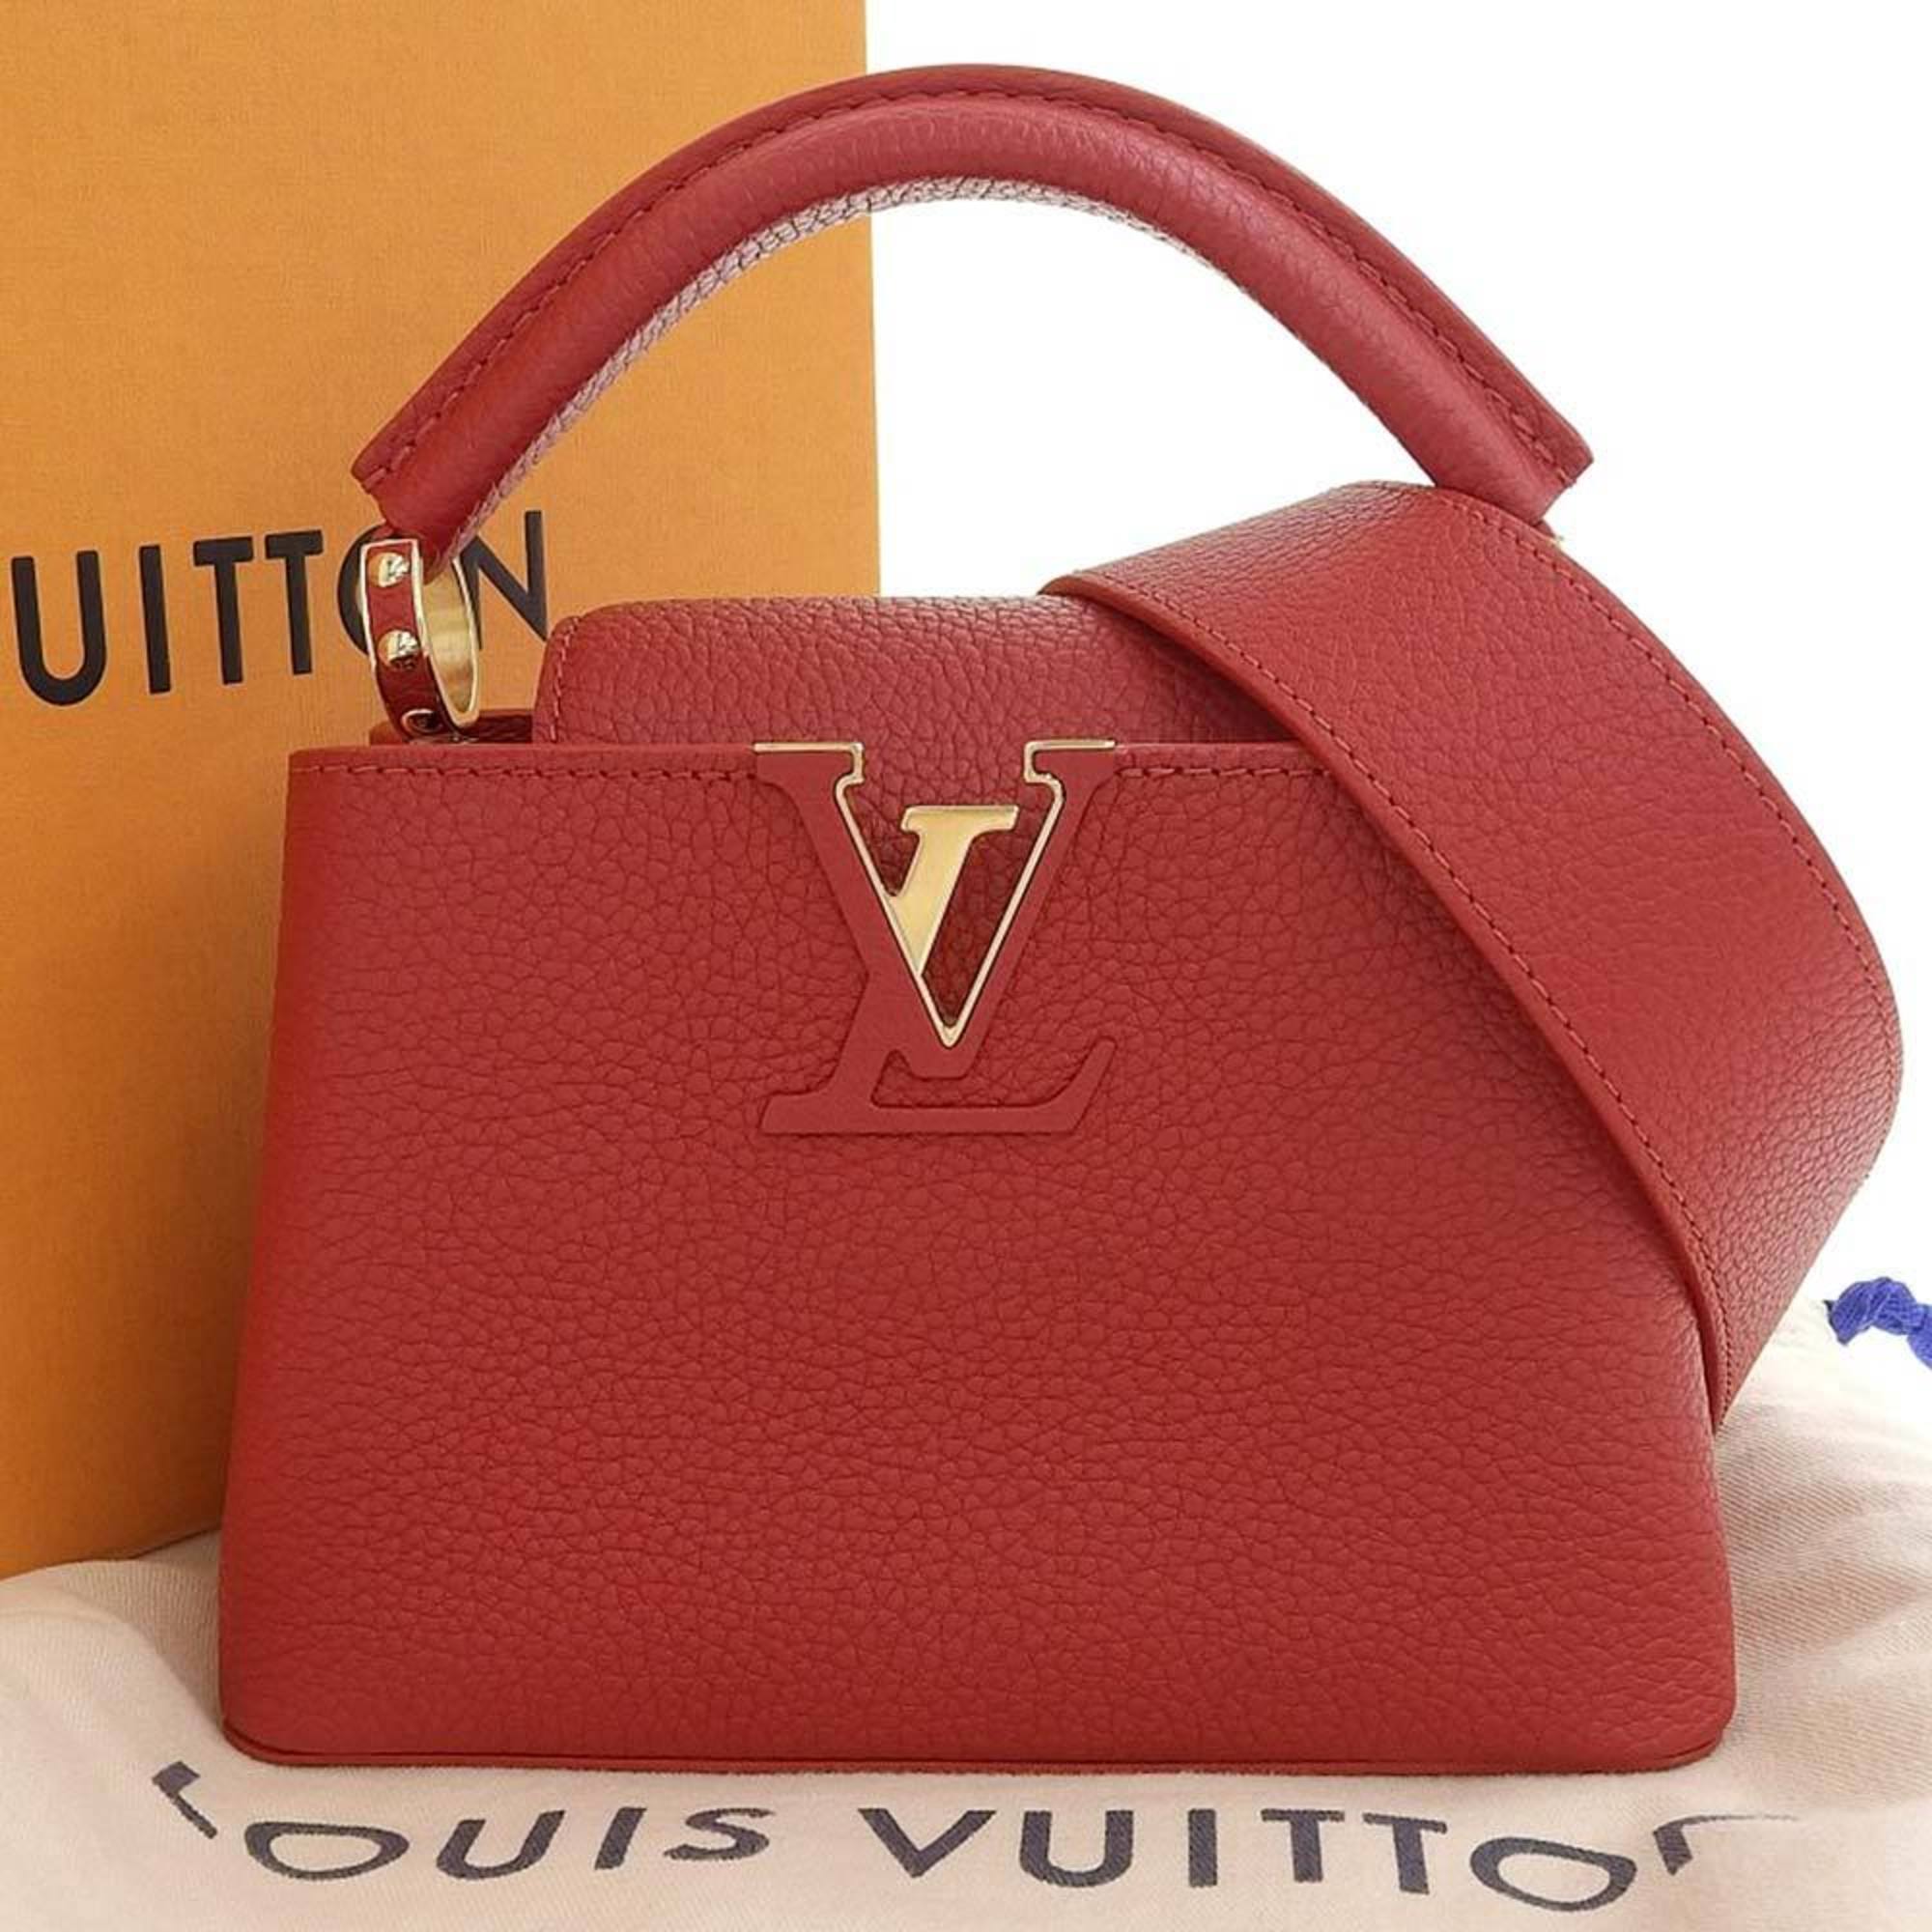 Louis Vuitton Capucine Mini Bag Taurillon Leather Scarlet M56845